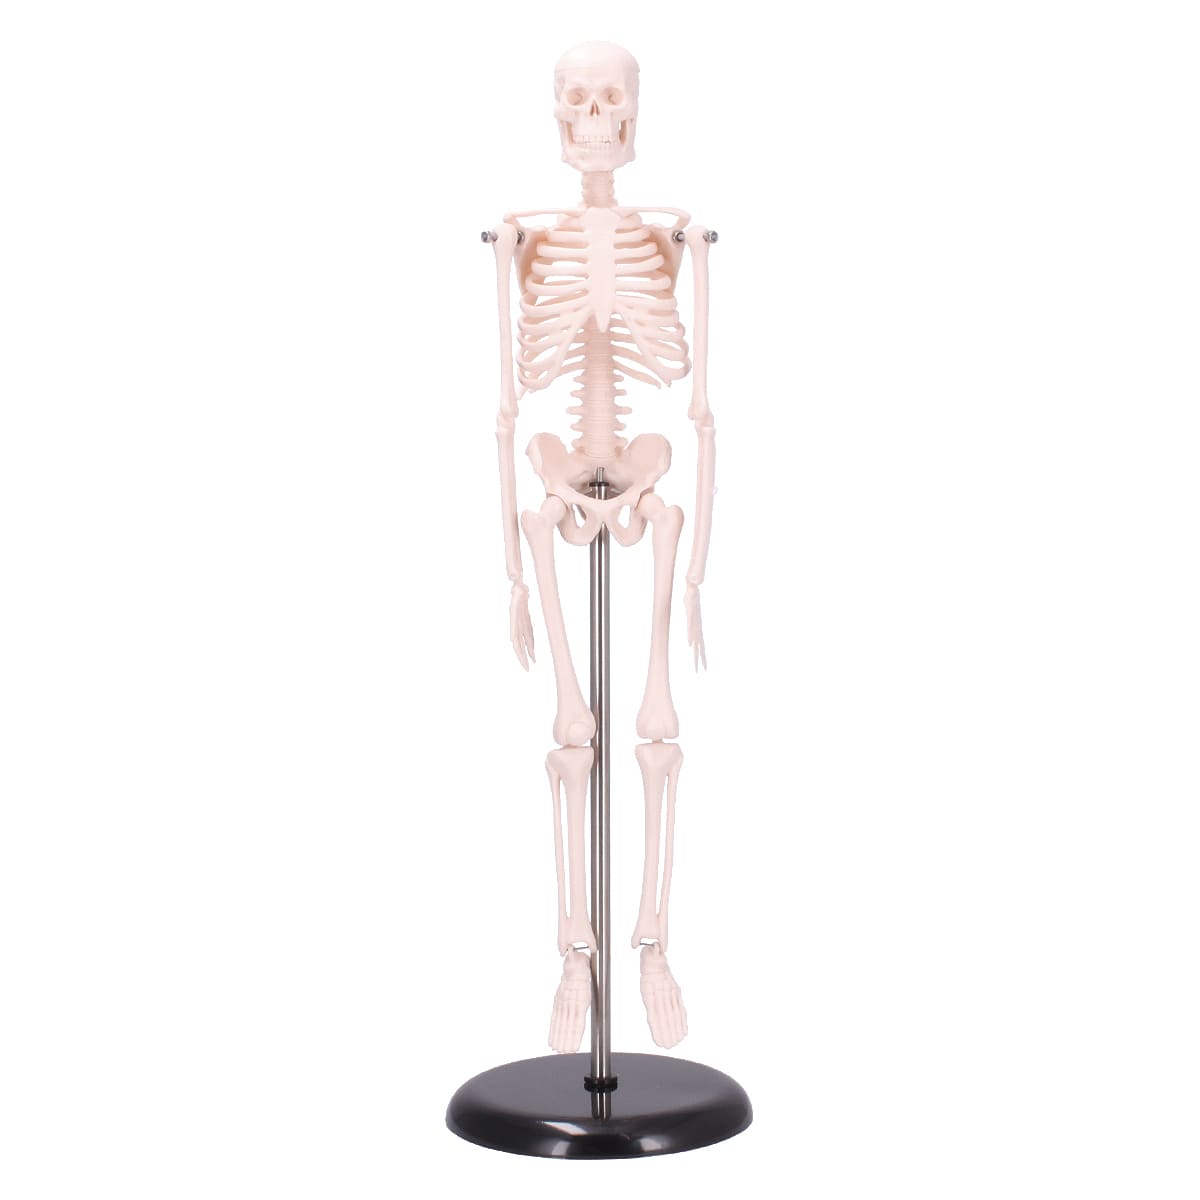 https://dccdn.de/www.doccheckshop.at/media/image/7c/99/f3/400314-0_drno-modell-skelett-mini-01.jpg